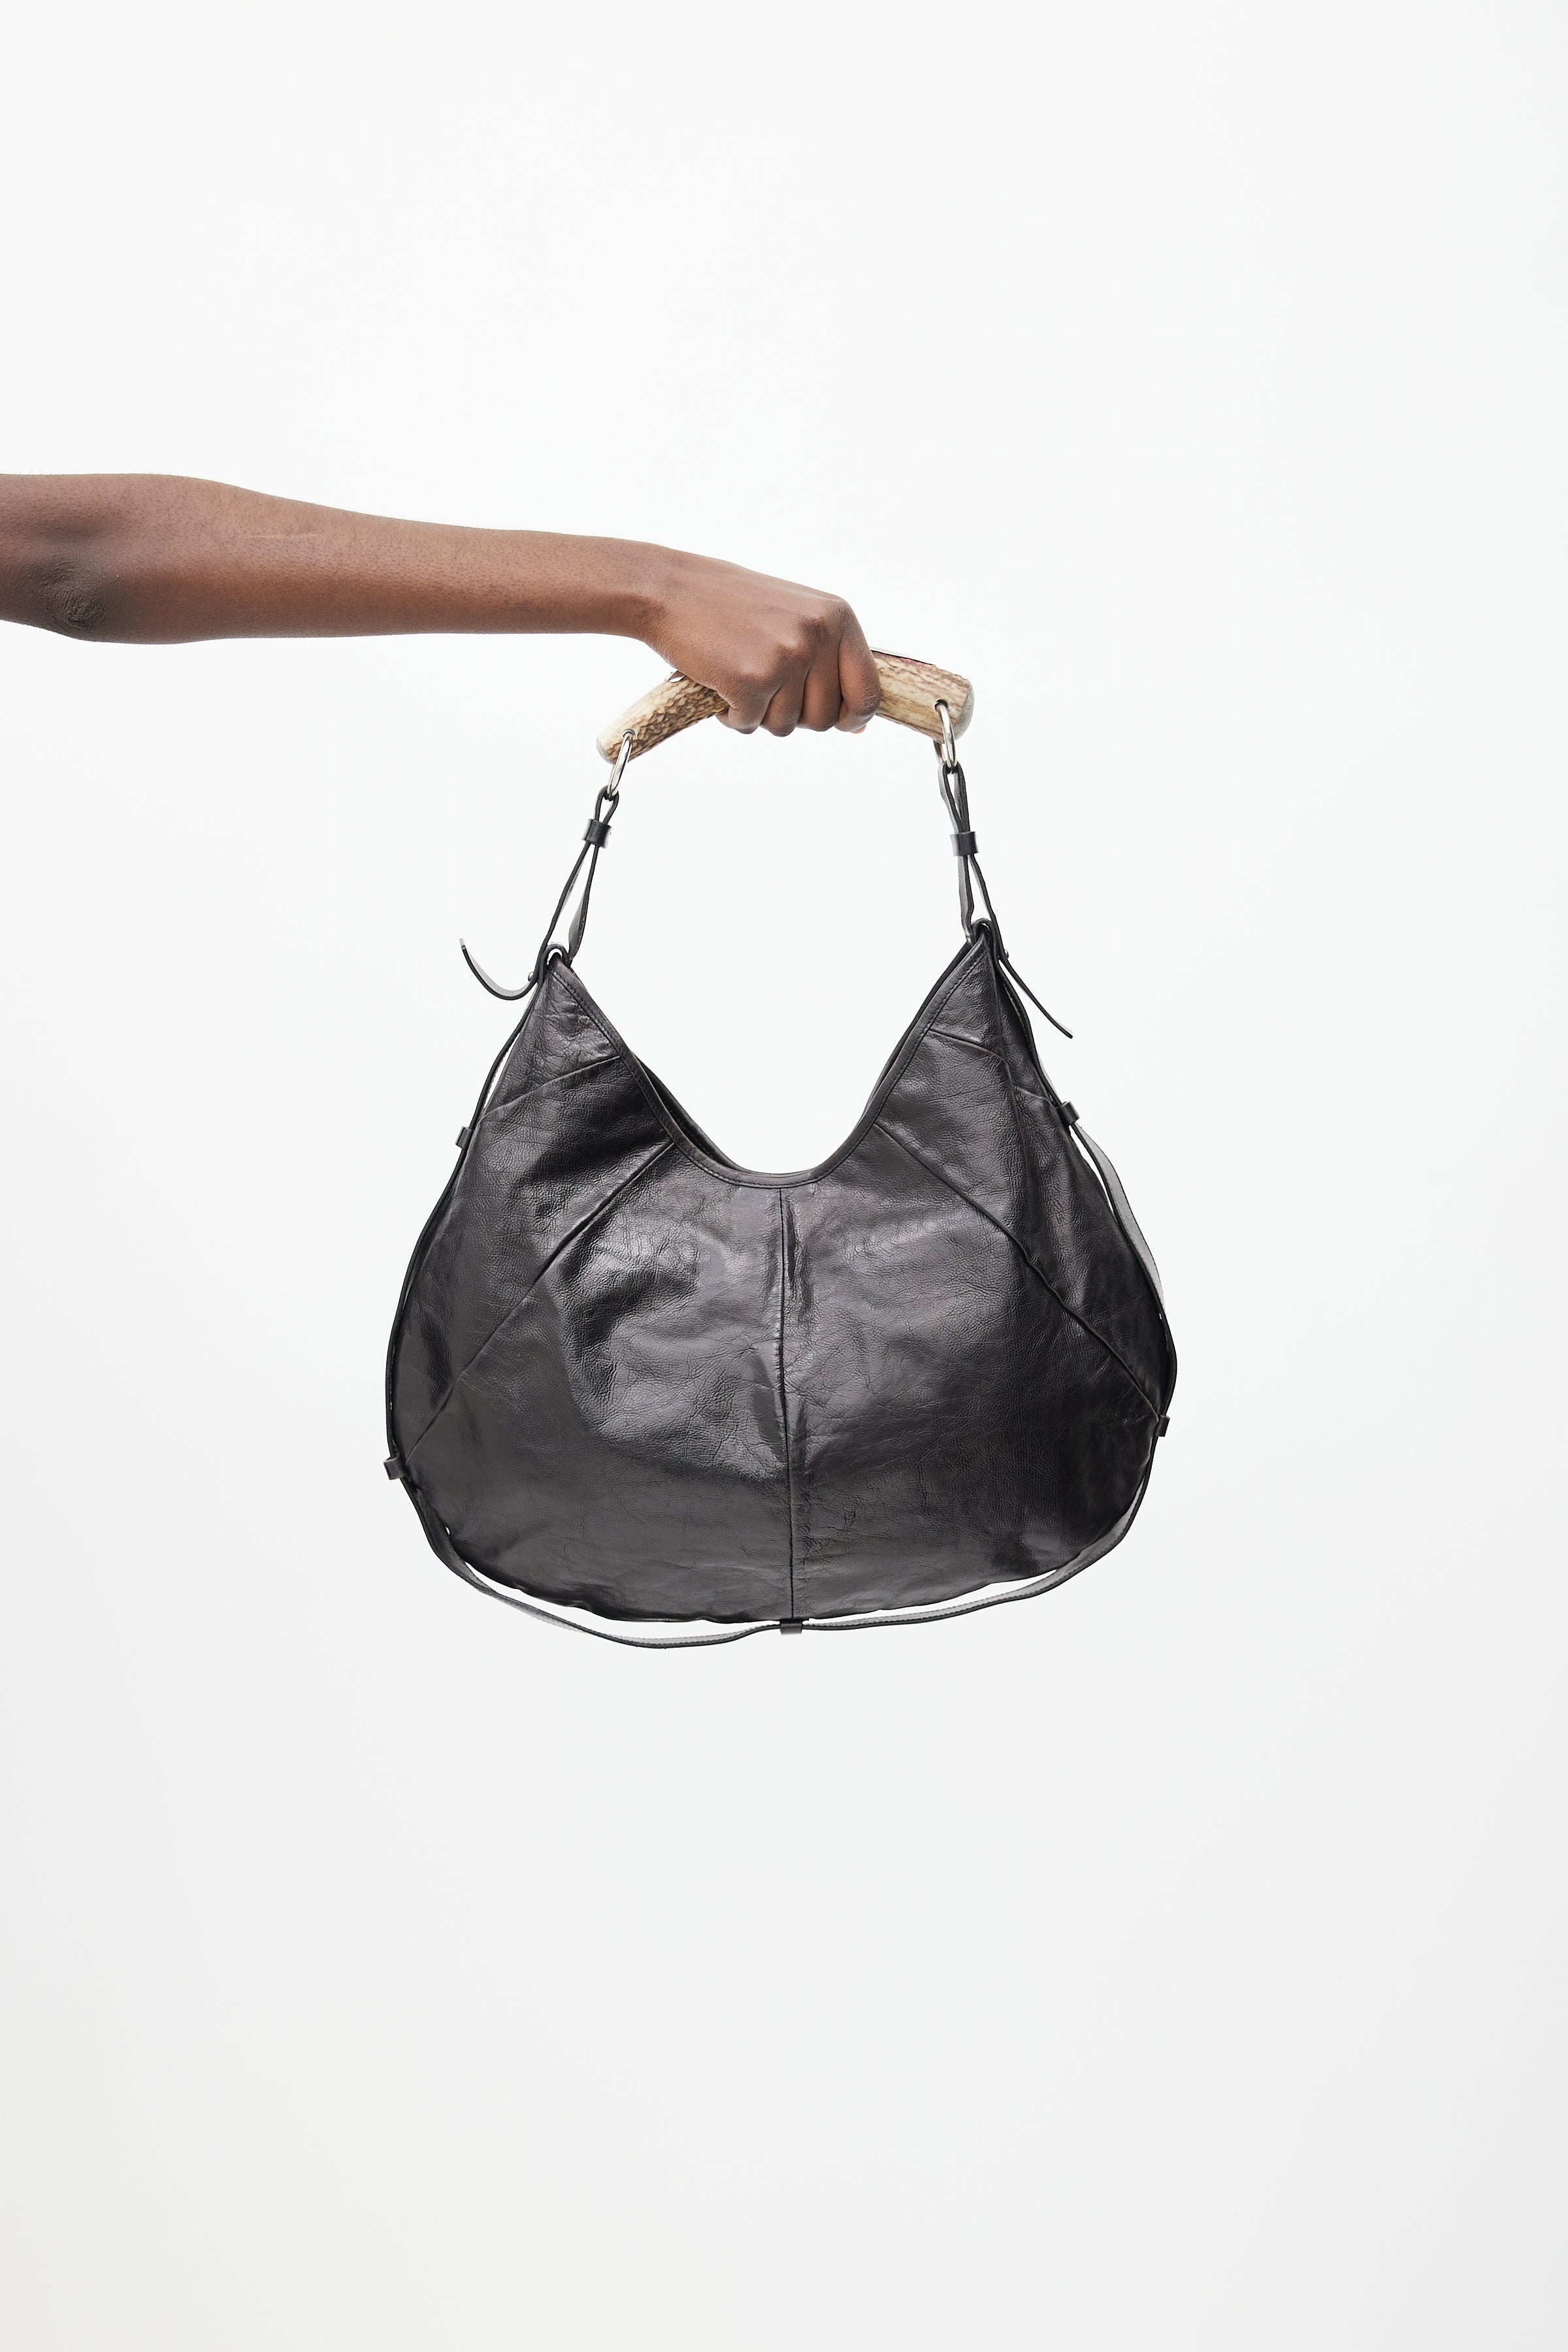 Mini Yves Saint Laurent Mombasa Black Horn Bag